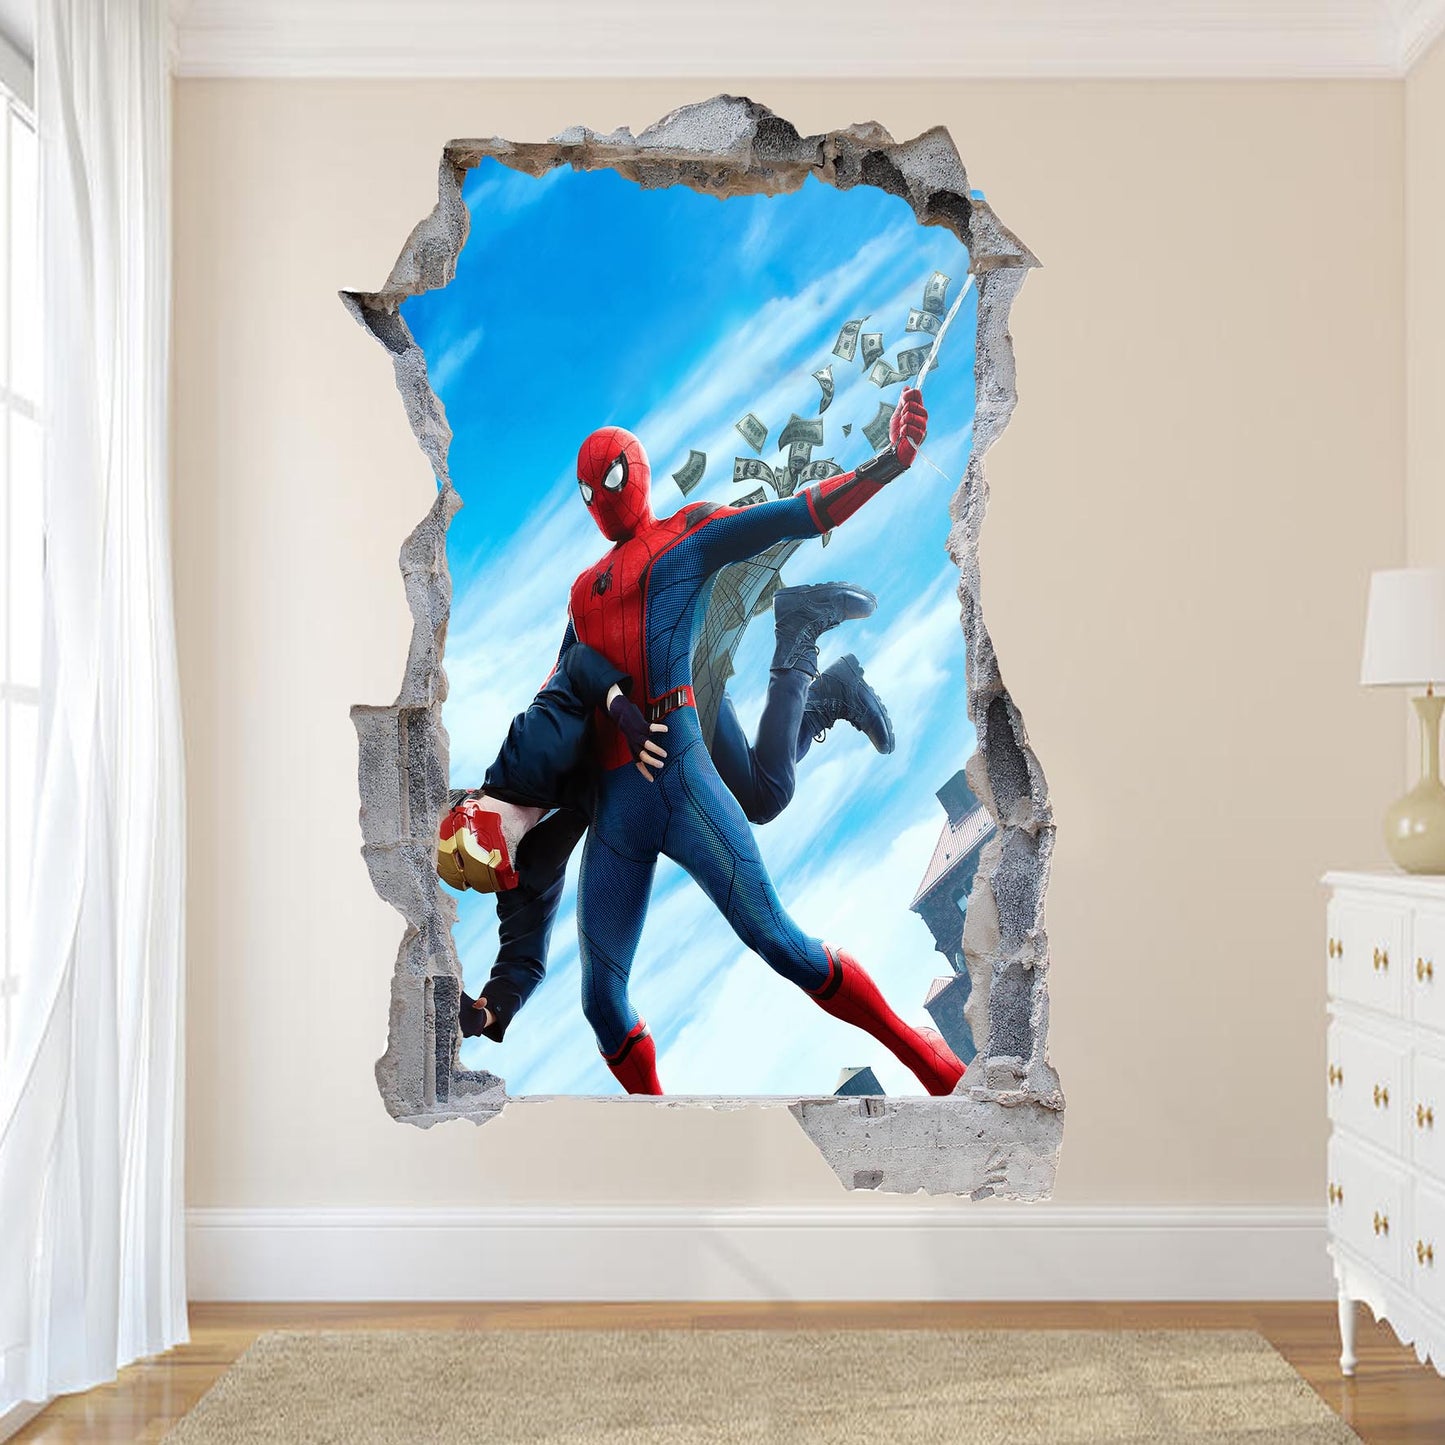 Superhero Ironman Spiderman Wall Sticker 3D Art Poster Office Nursery Home Decor Decal Mural ST9